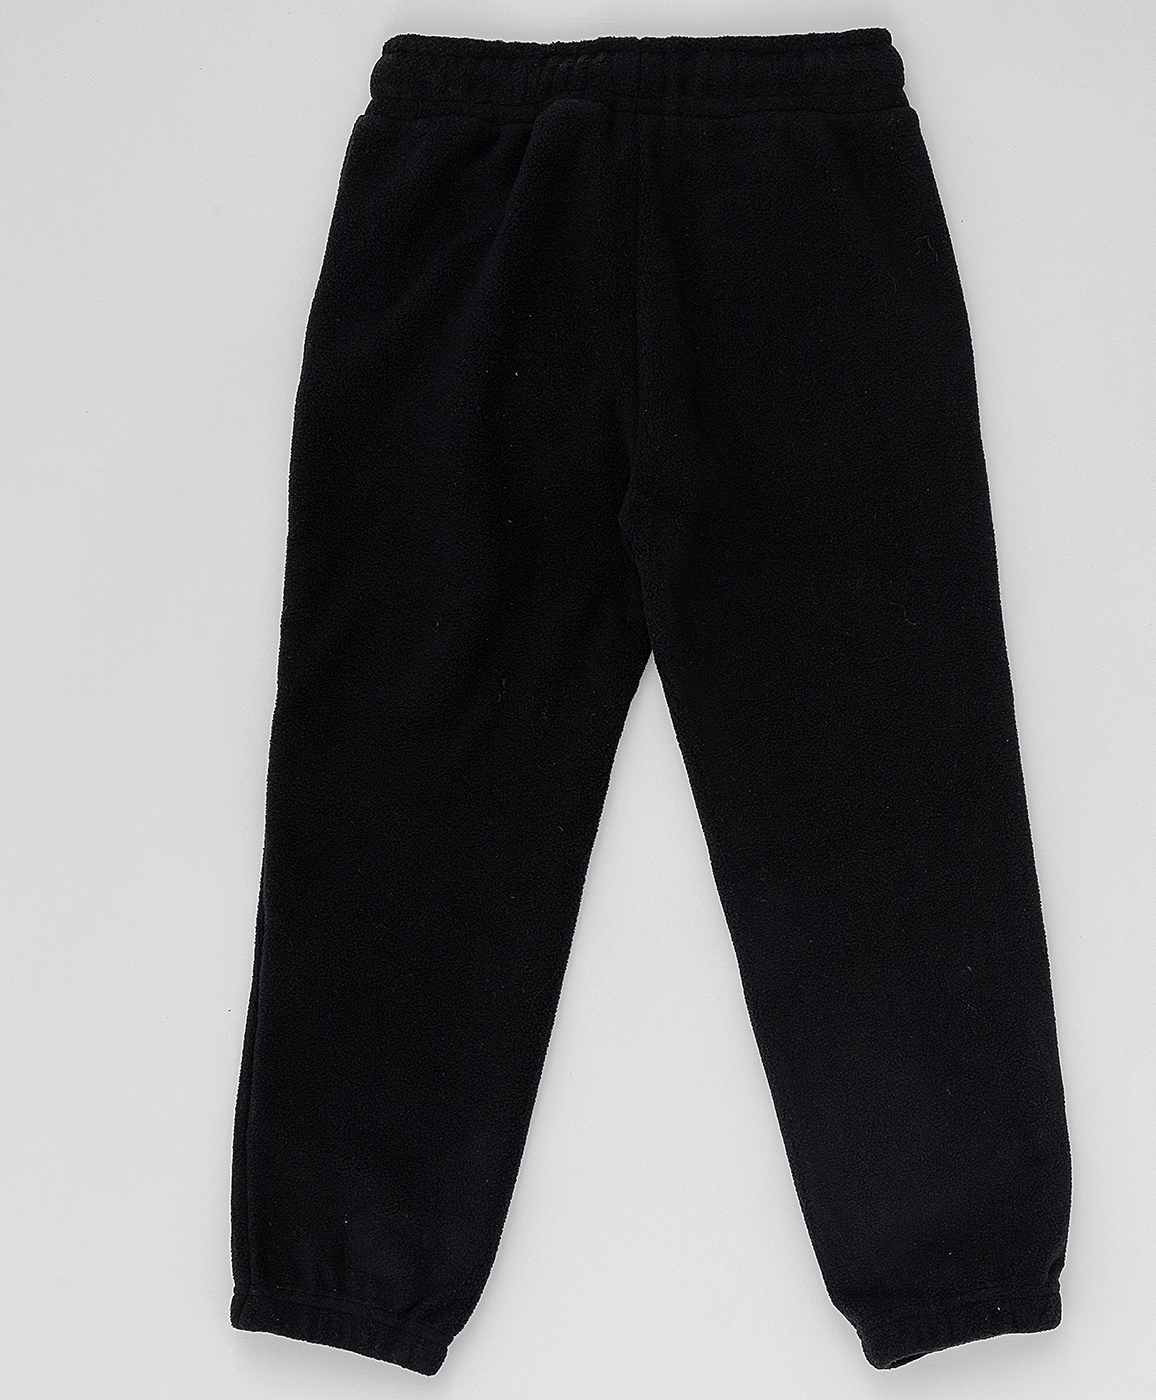 Черные флисовые брюки Button Blue 220BBBA56010800, размер 158, цвет черный на резинке - фото 2